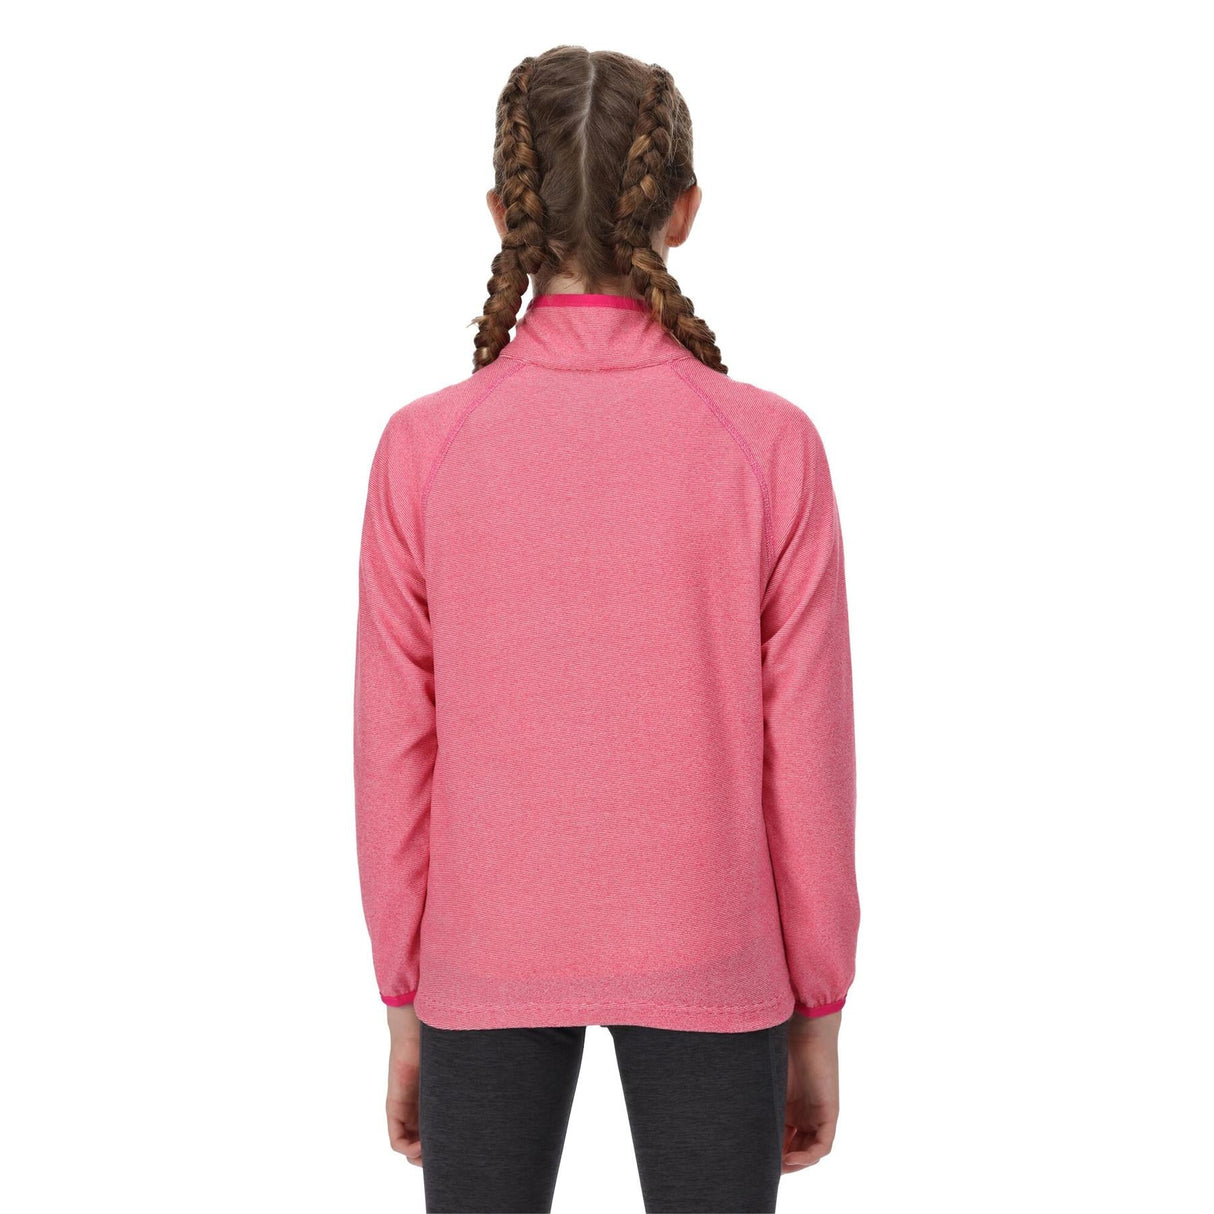 Regatta Kids Loco Half Zip Fleece - Premium clothing from Regatta - Just $10.99! Shop now at Warwickshire Clothing